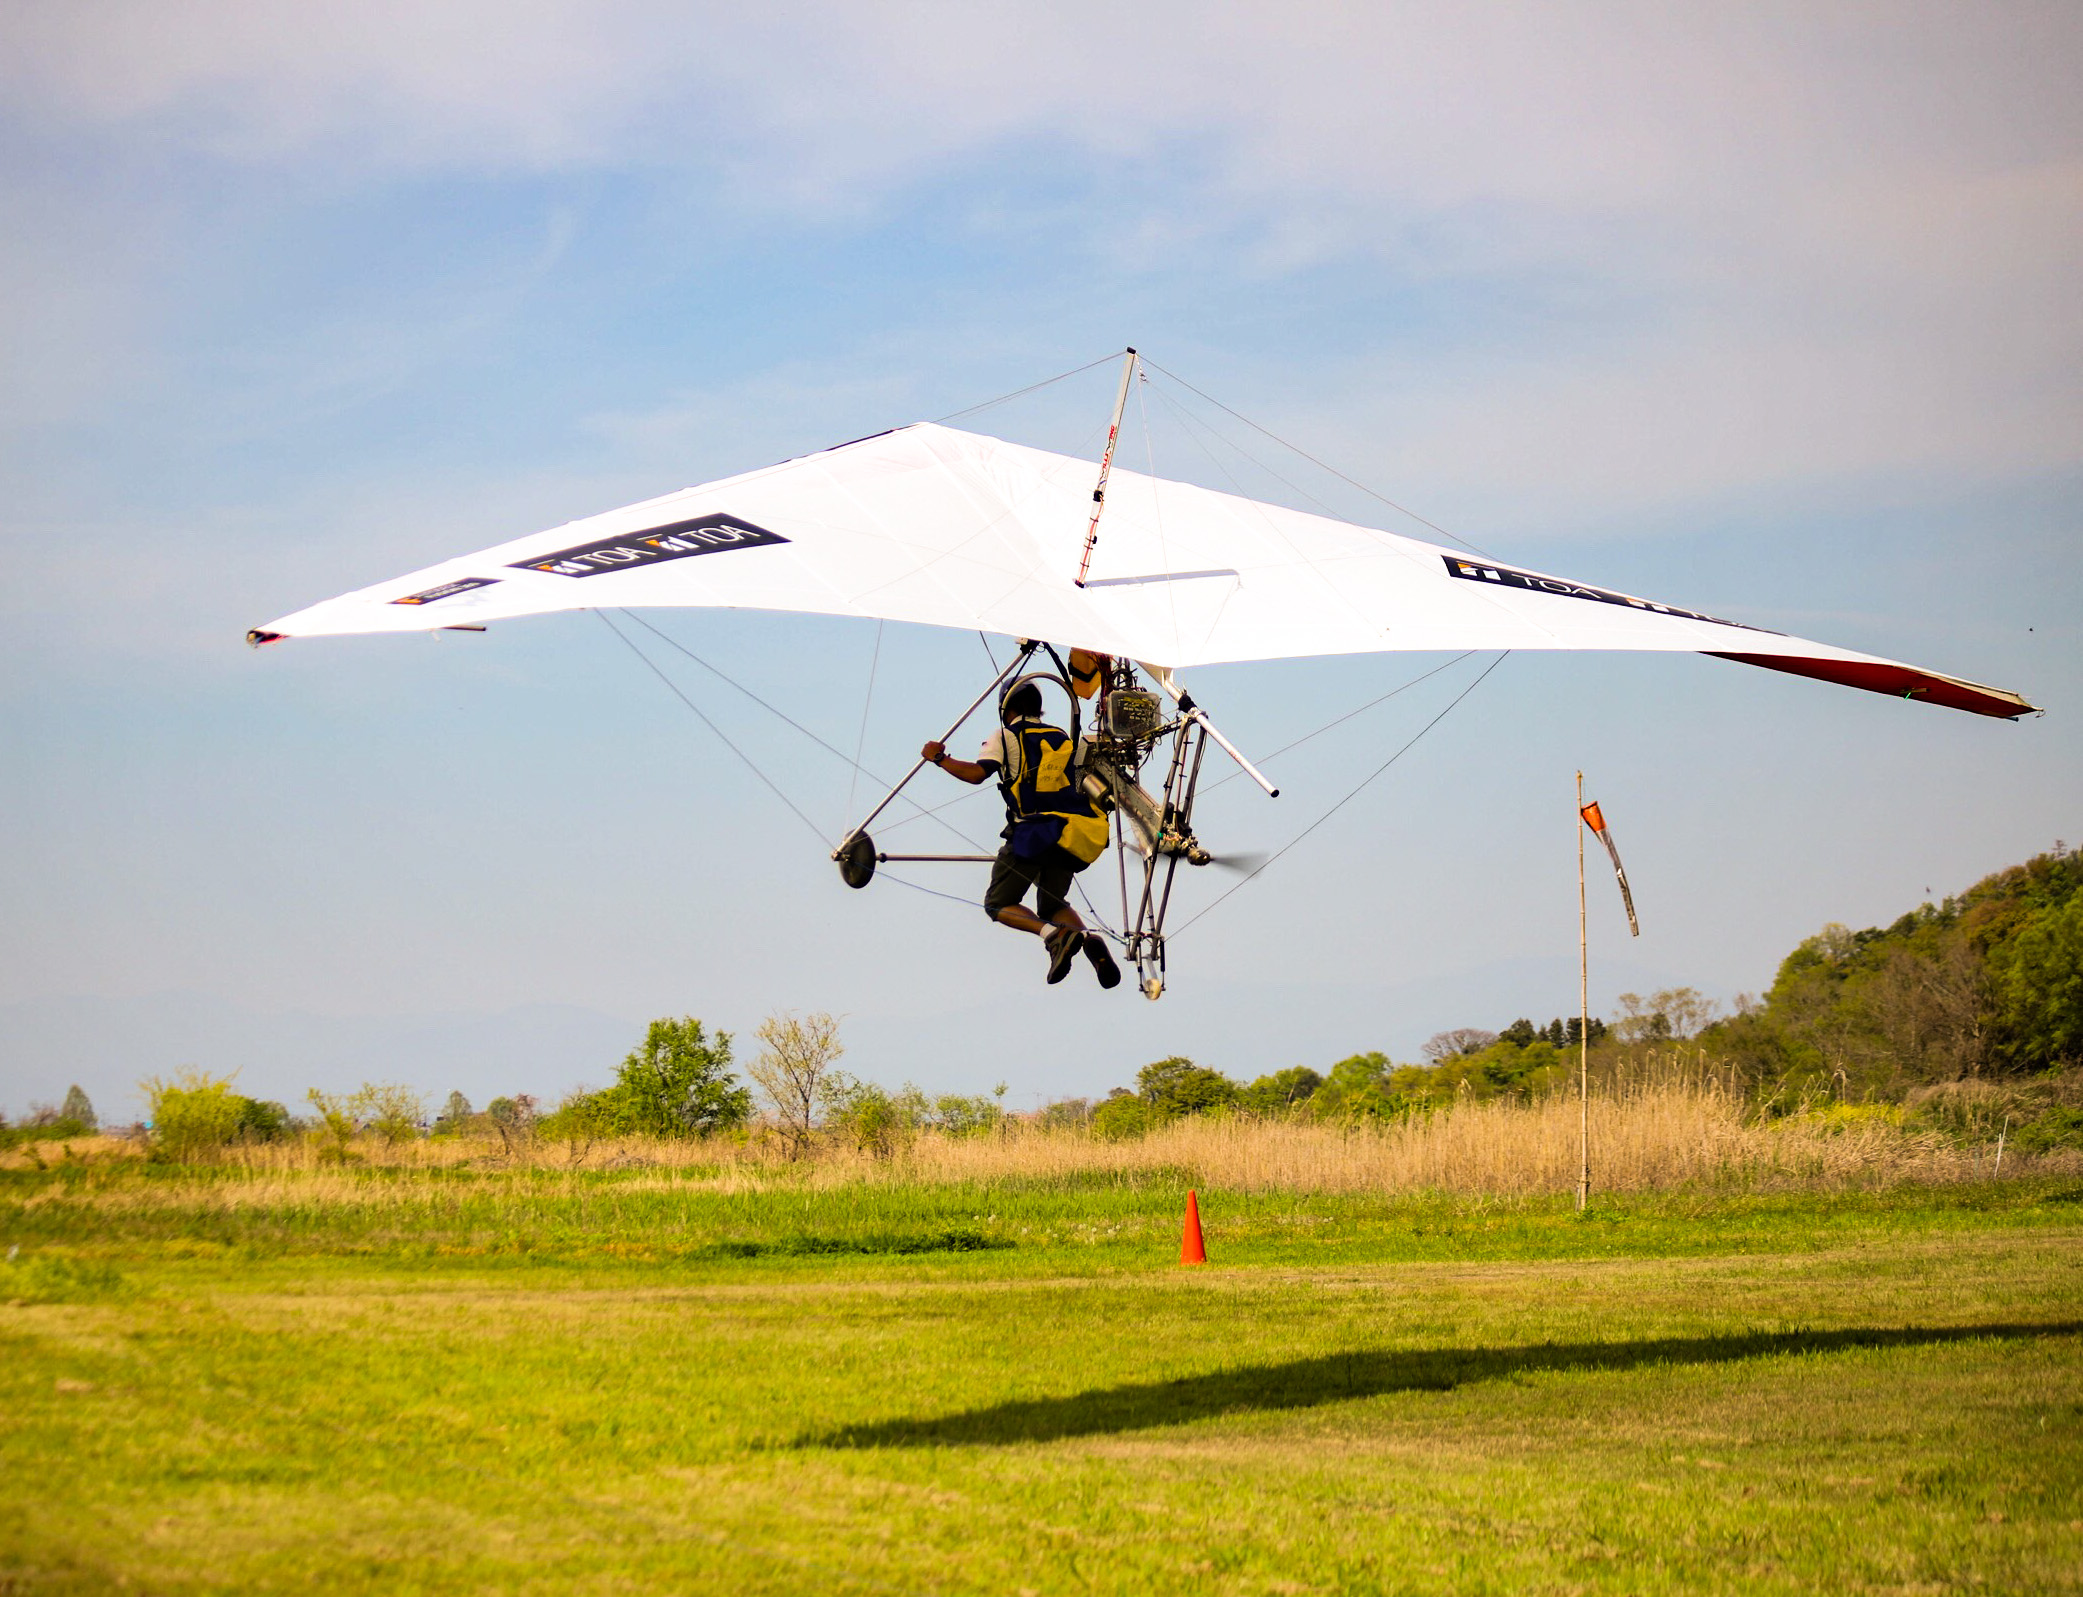 コンセプトは 空飛ぶスーパーカブ 次世代の空飛ぶ乗り物を開発するチーム Ppkp が試作機の初飛行に成功 もりもと技術研究所のプレスリリース